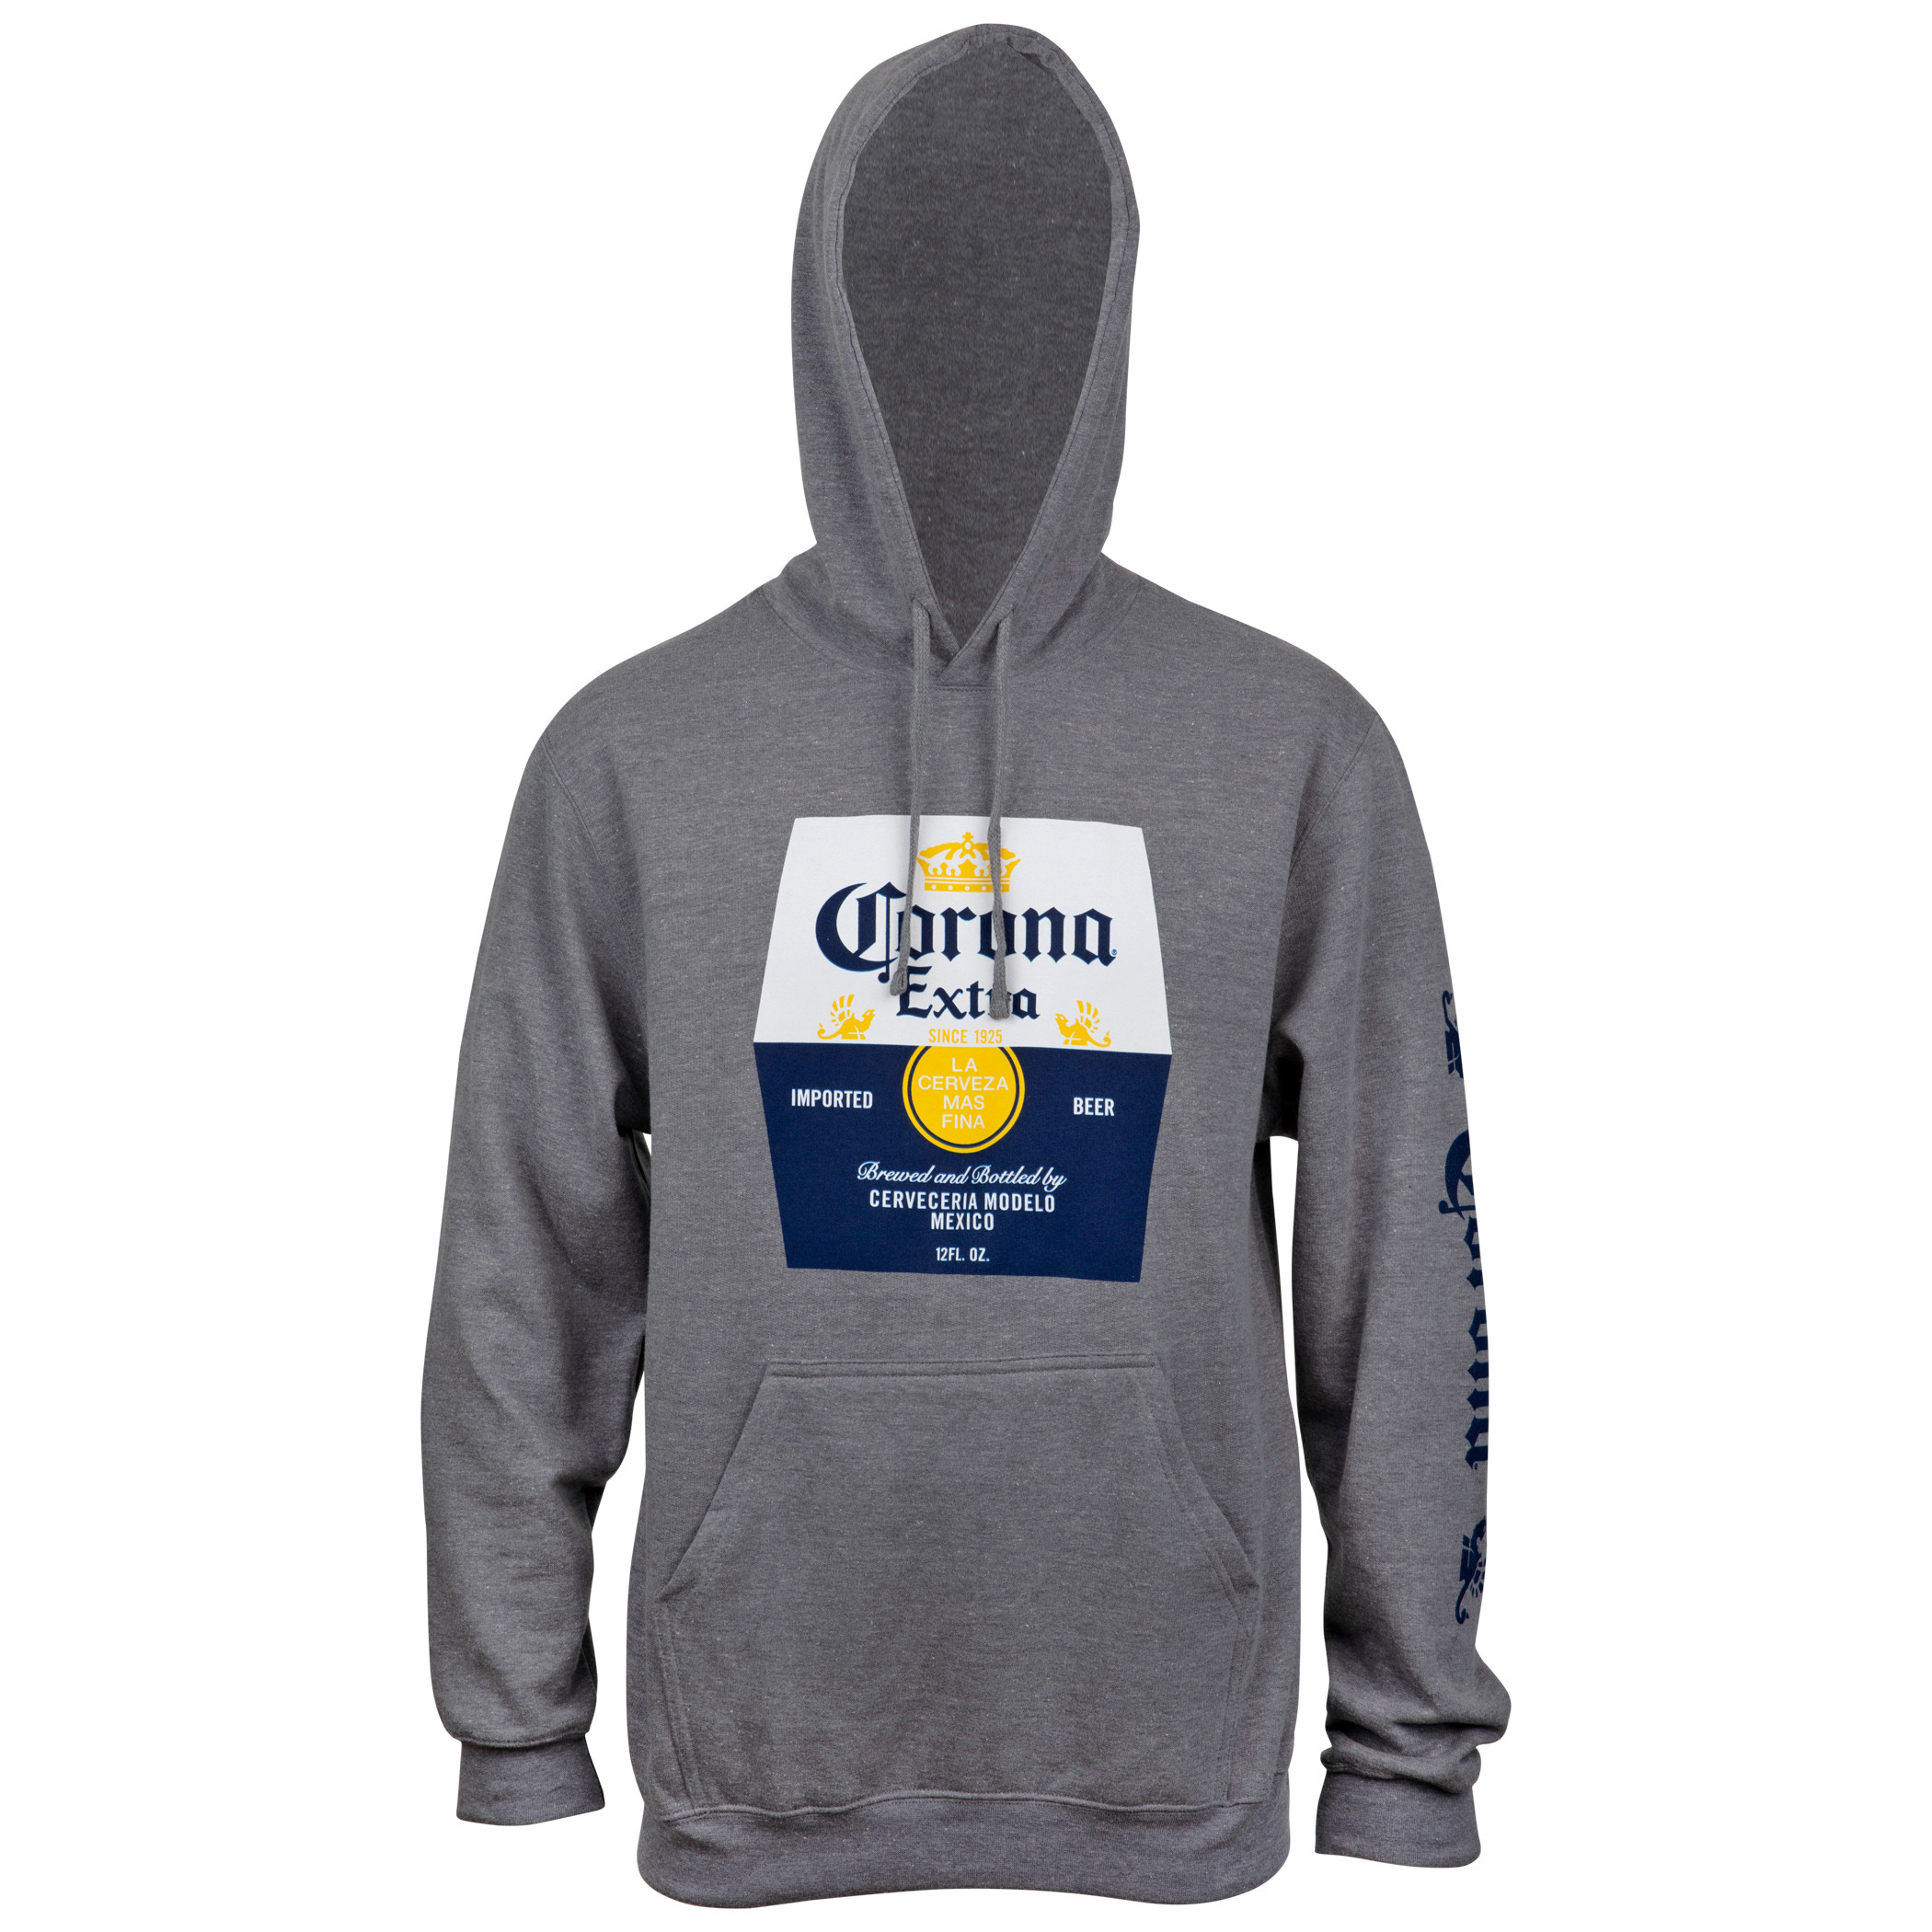 Corona Extra Beer Label Grey Hooded Sweatshirt With Sleeve Print